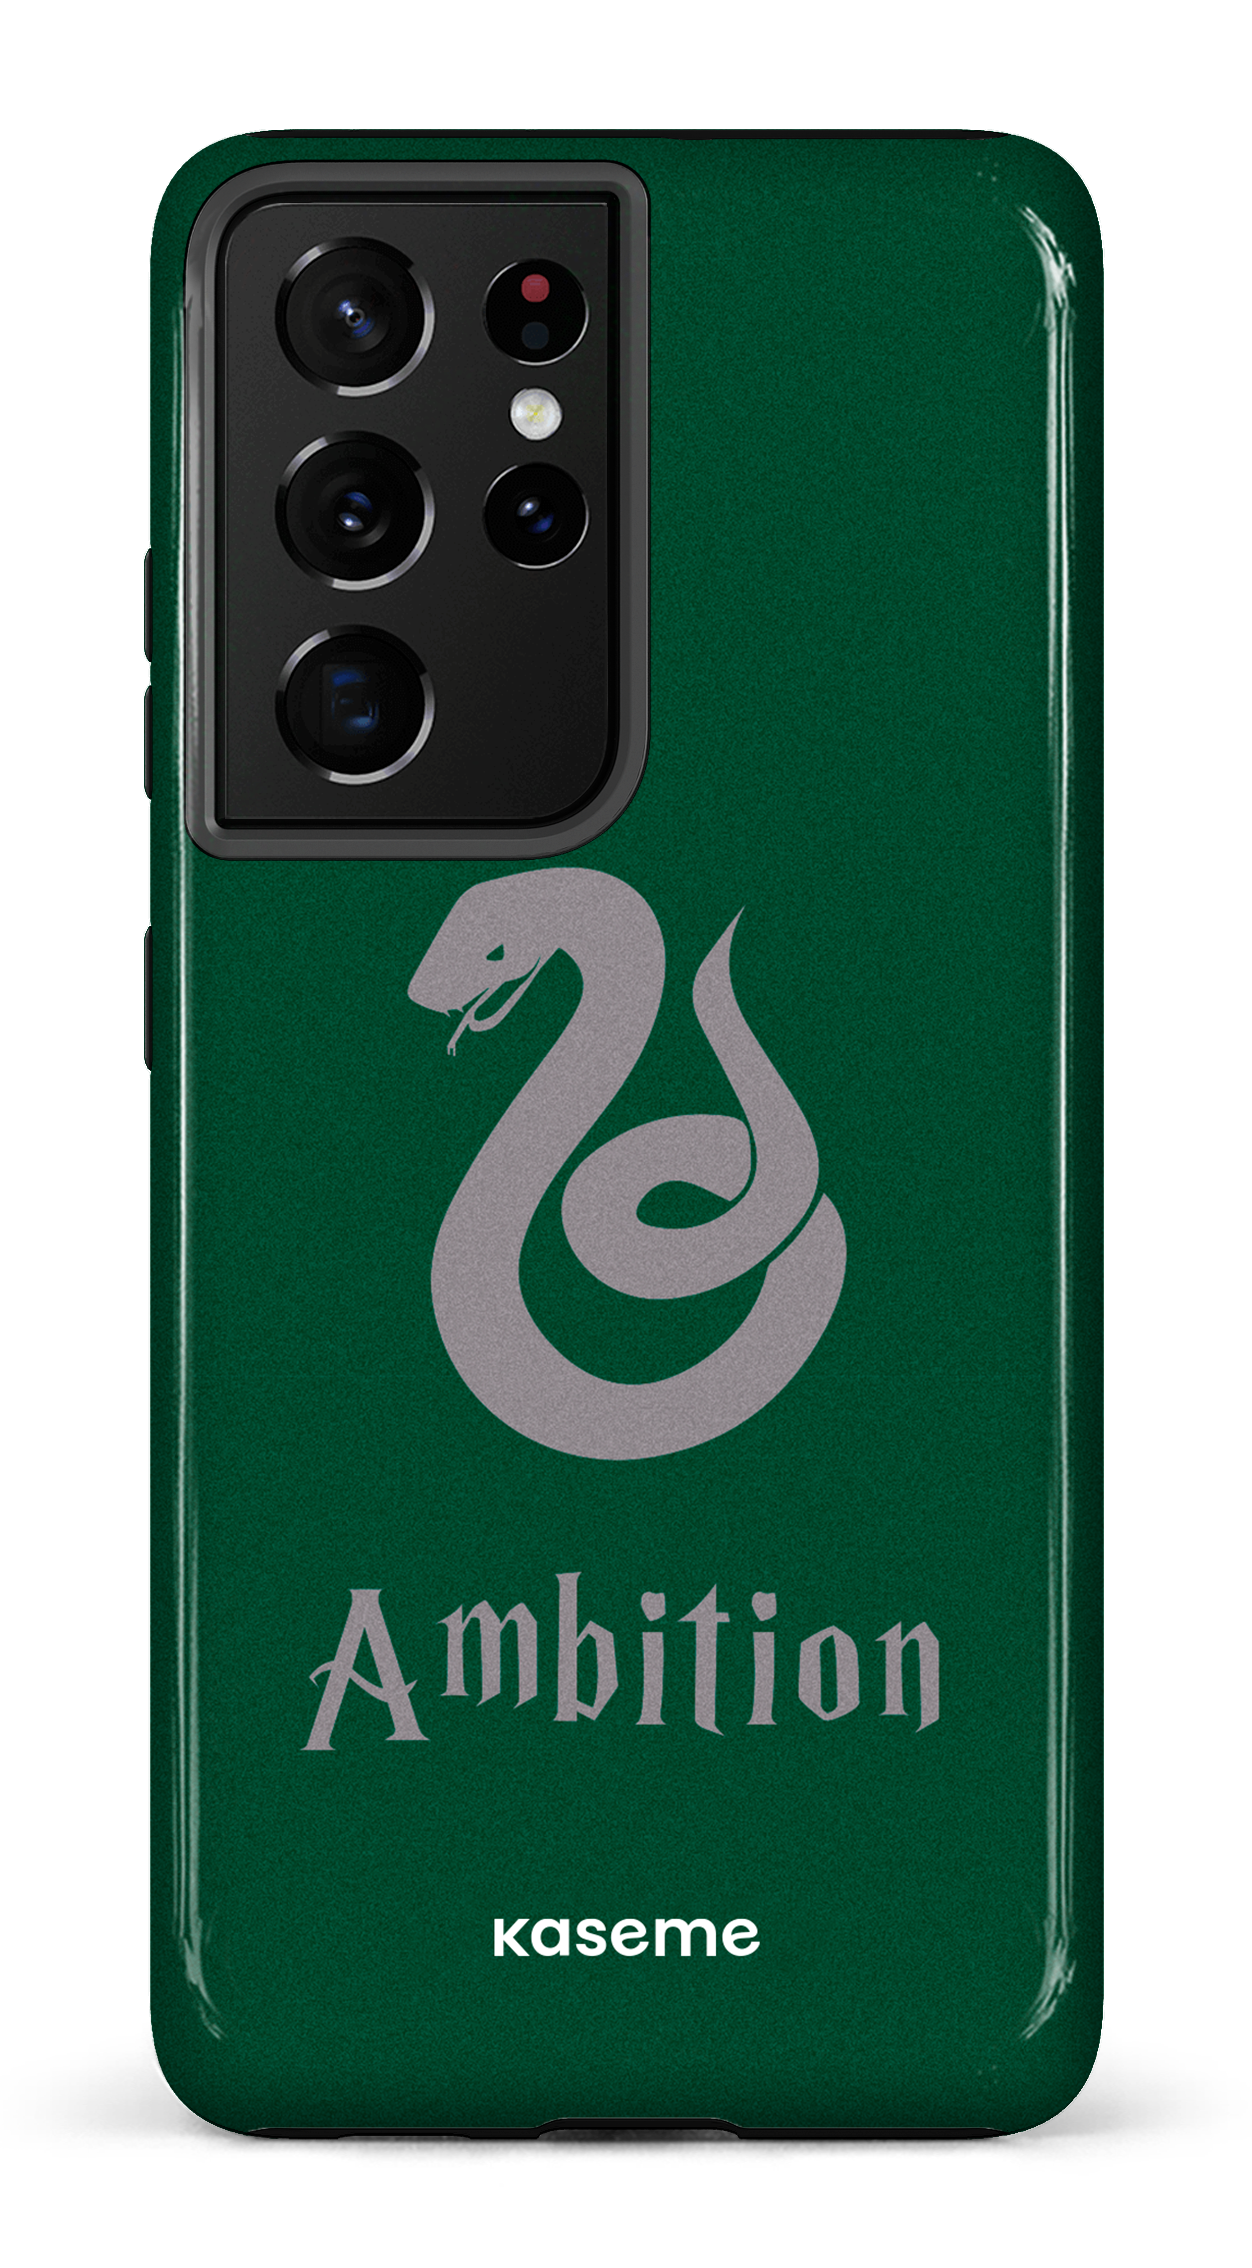 Ambition - Galaxy S21 Ultra